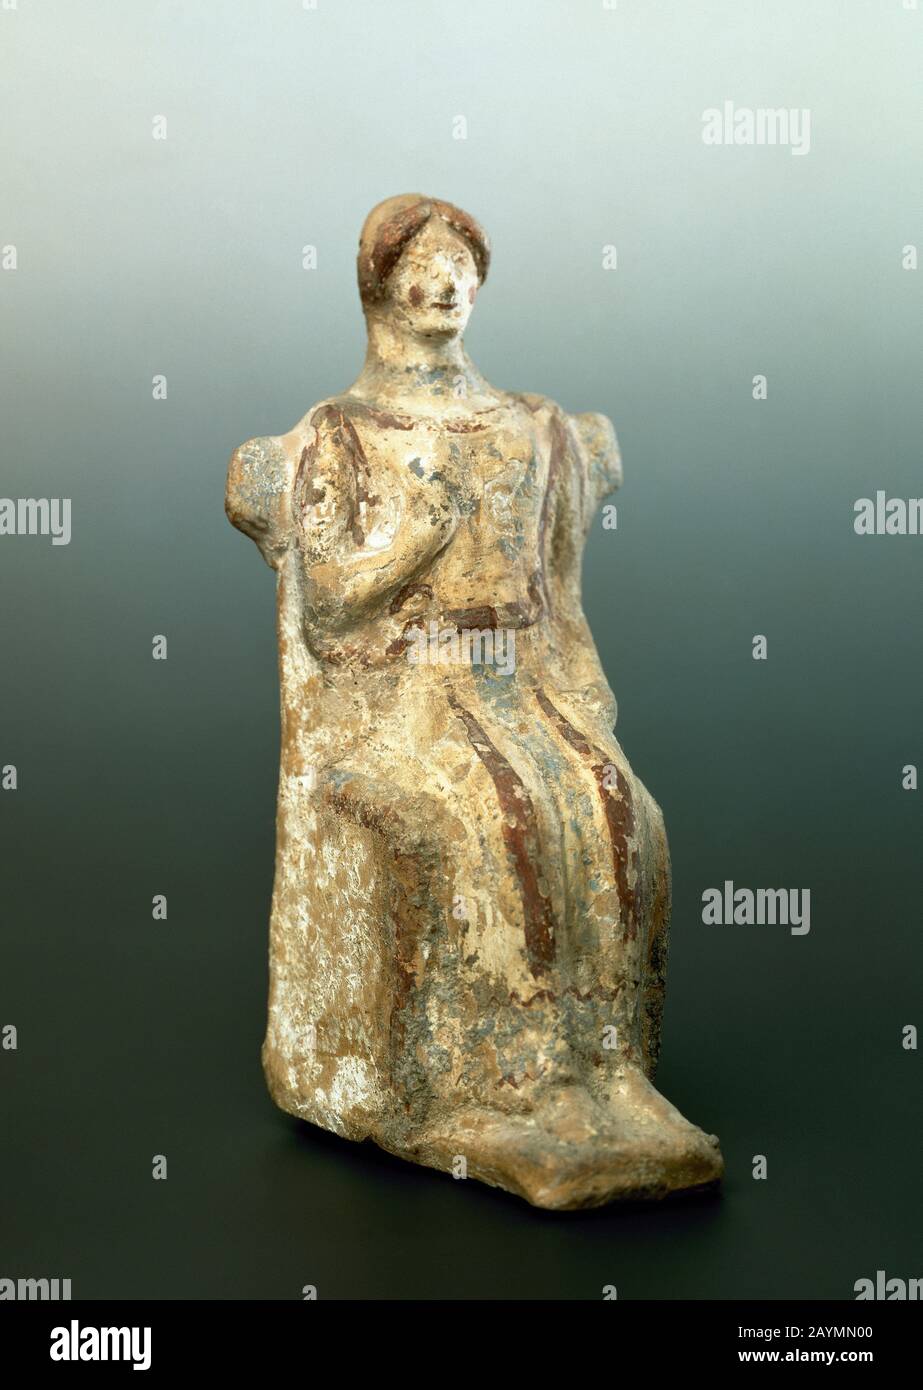 Iberische Ära. Weibliche Skulptur in Terrakotta, die eine Fruchtbarkeits-Göttin darstellt. Archäologisches Nationalmuseum. Madrid, Spanien. Stockfoto